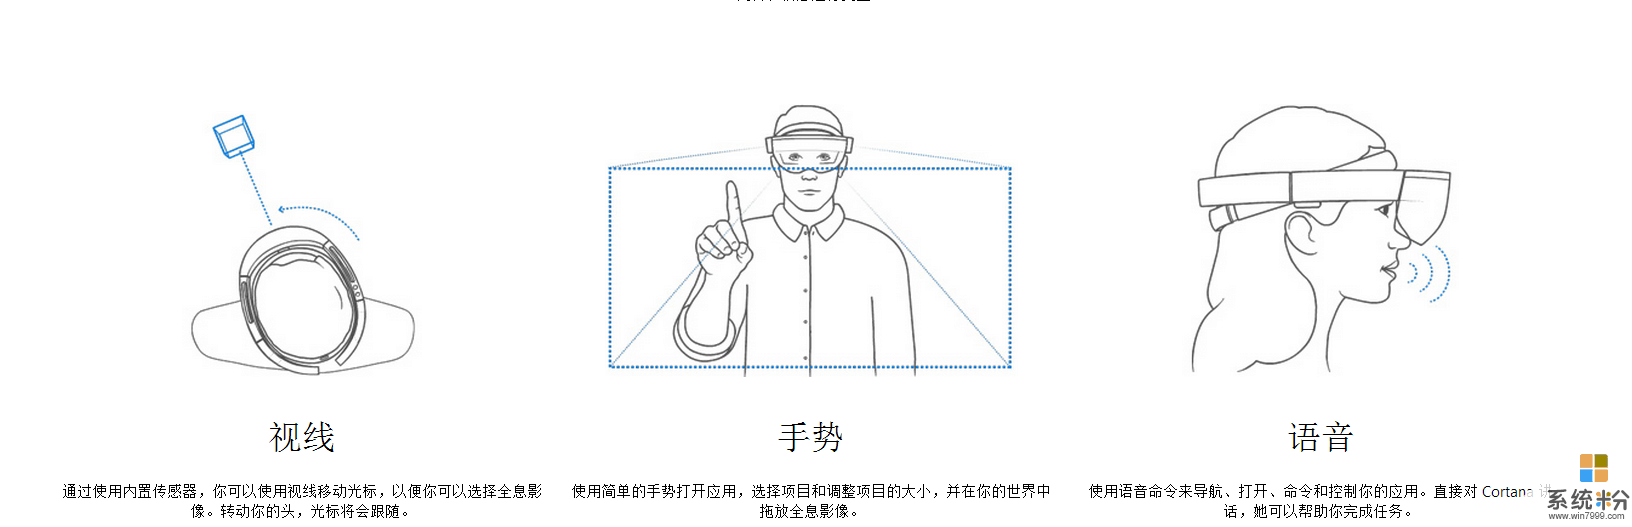 微软黑科技全息影像 HoloLens眼镜 实现混合现实(1)